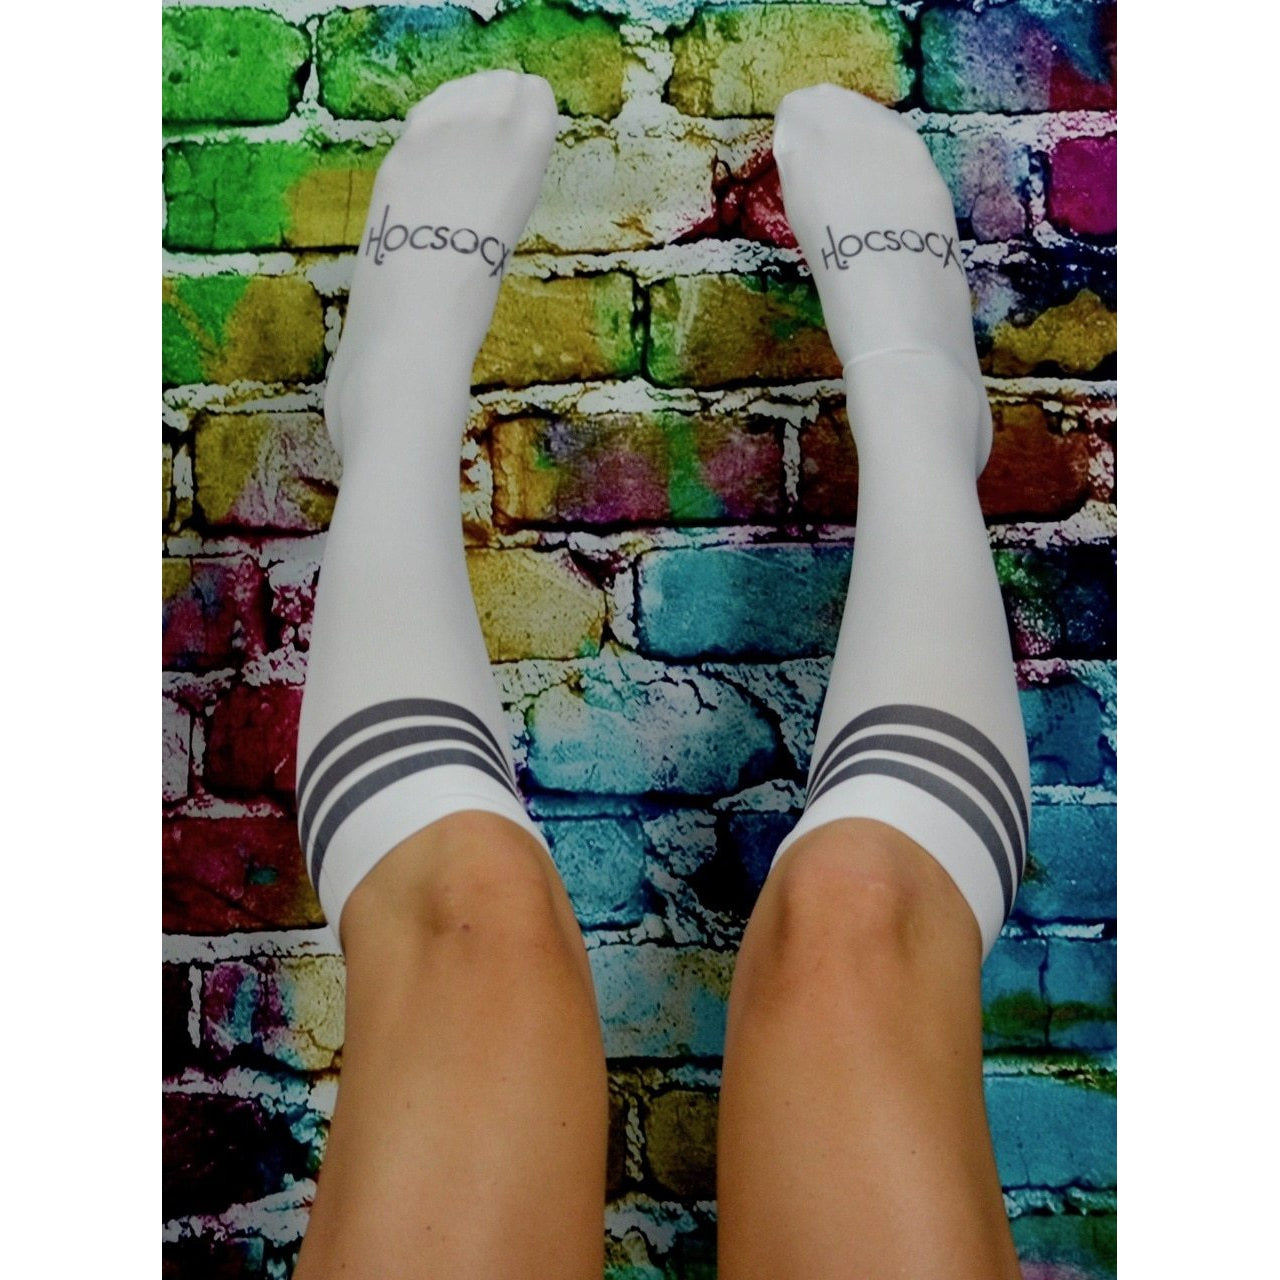 Hocsocx Black Tube Stripe Sport Socks